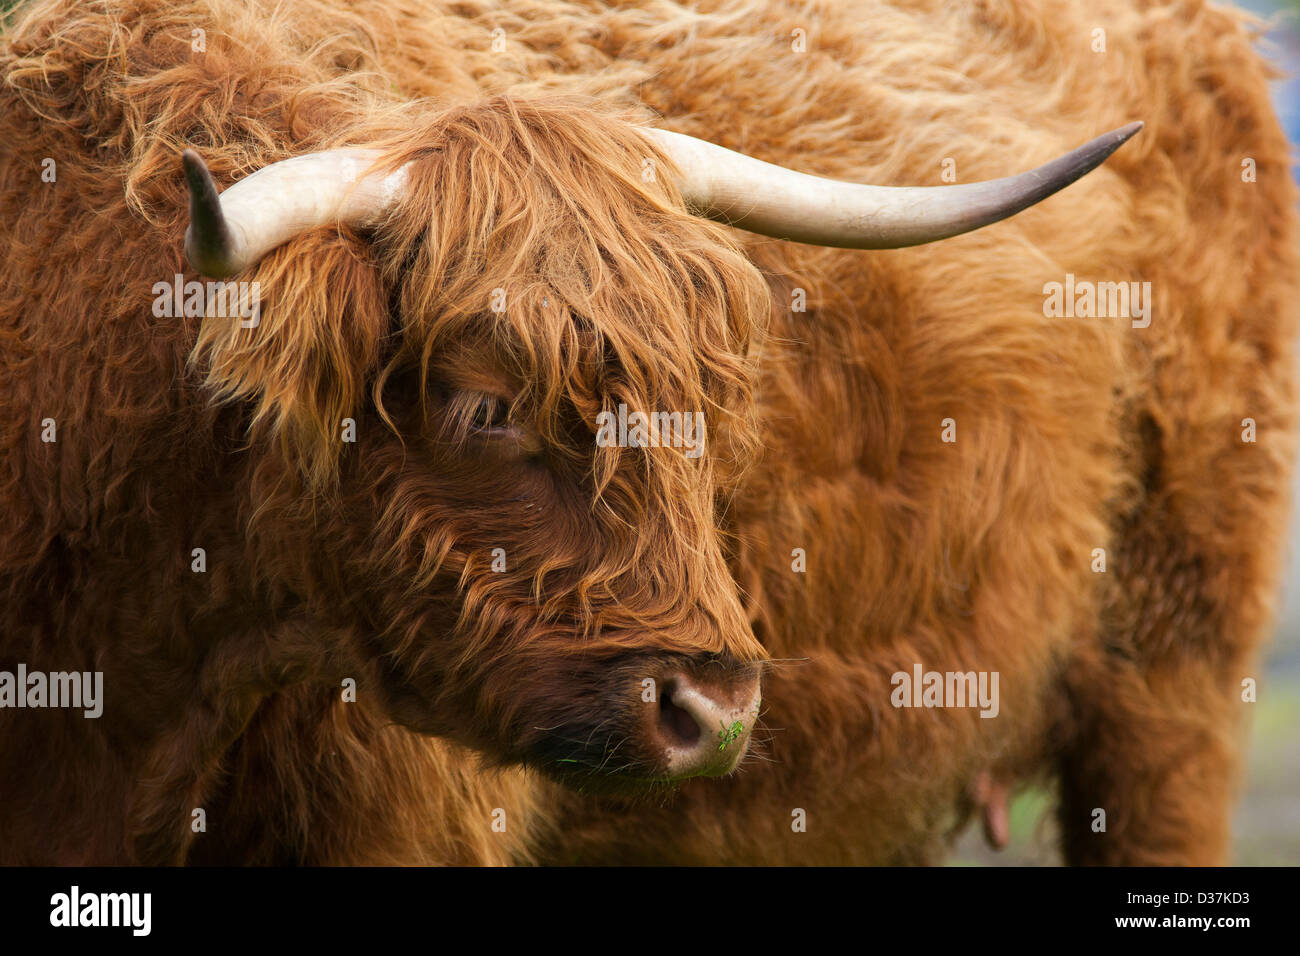 Une vache Highland cattle, ou Kyloe ou dans un champ dans les Highlands écossais Banque D'Images